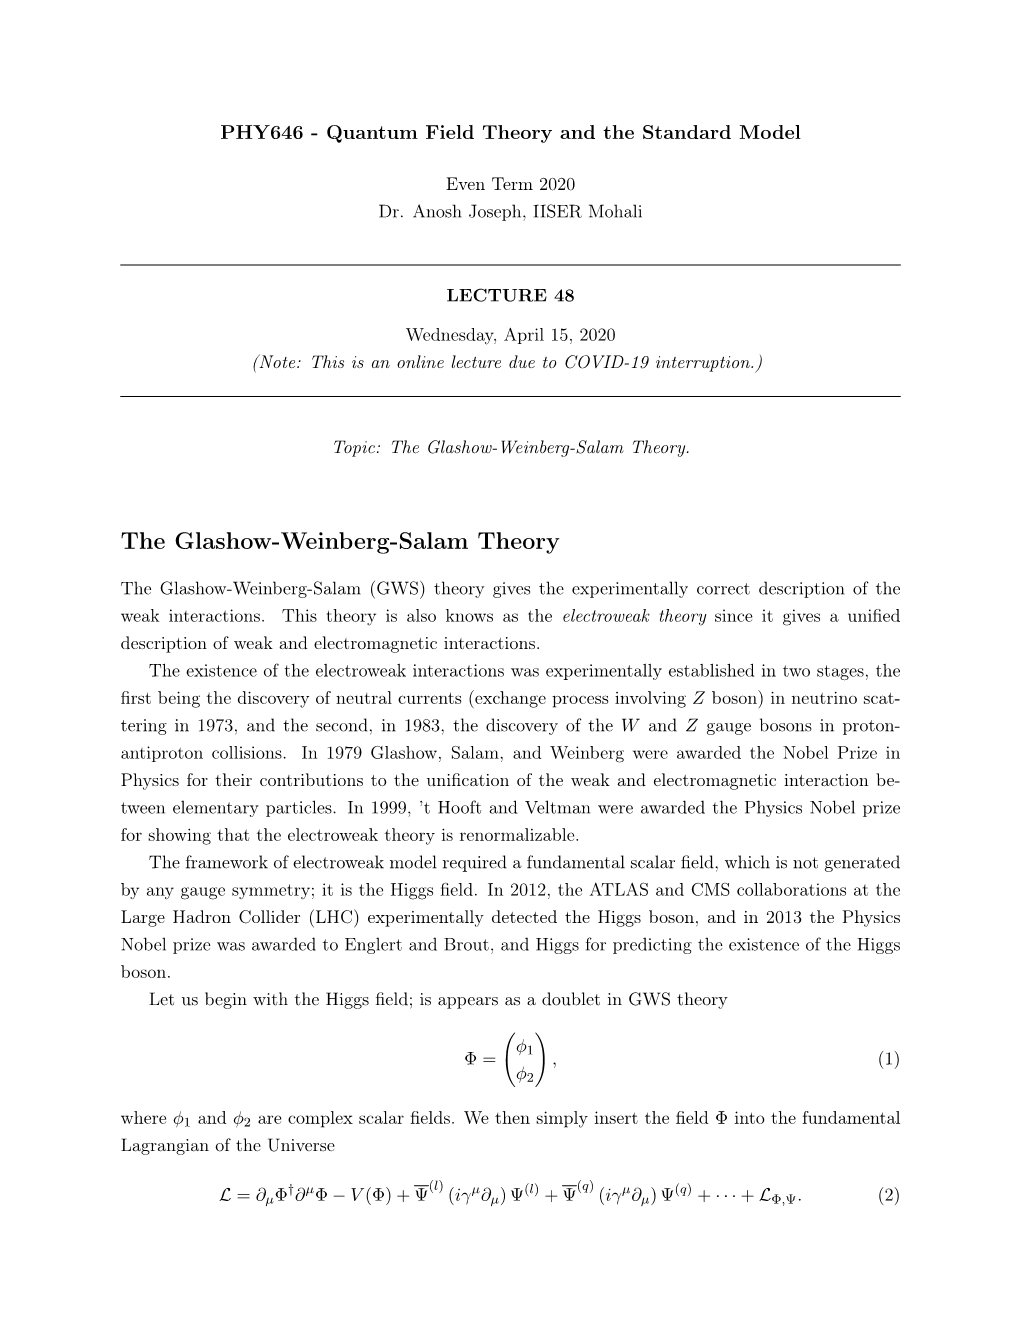 The Glashow-Weinberg-Salam Theory